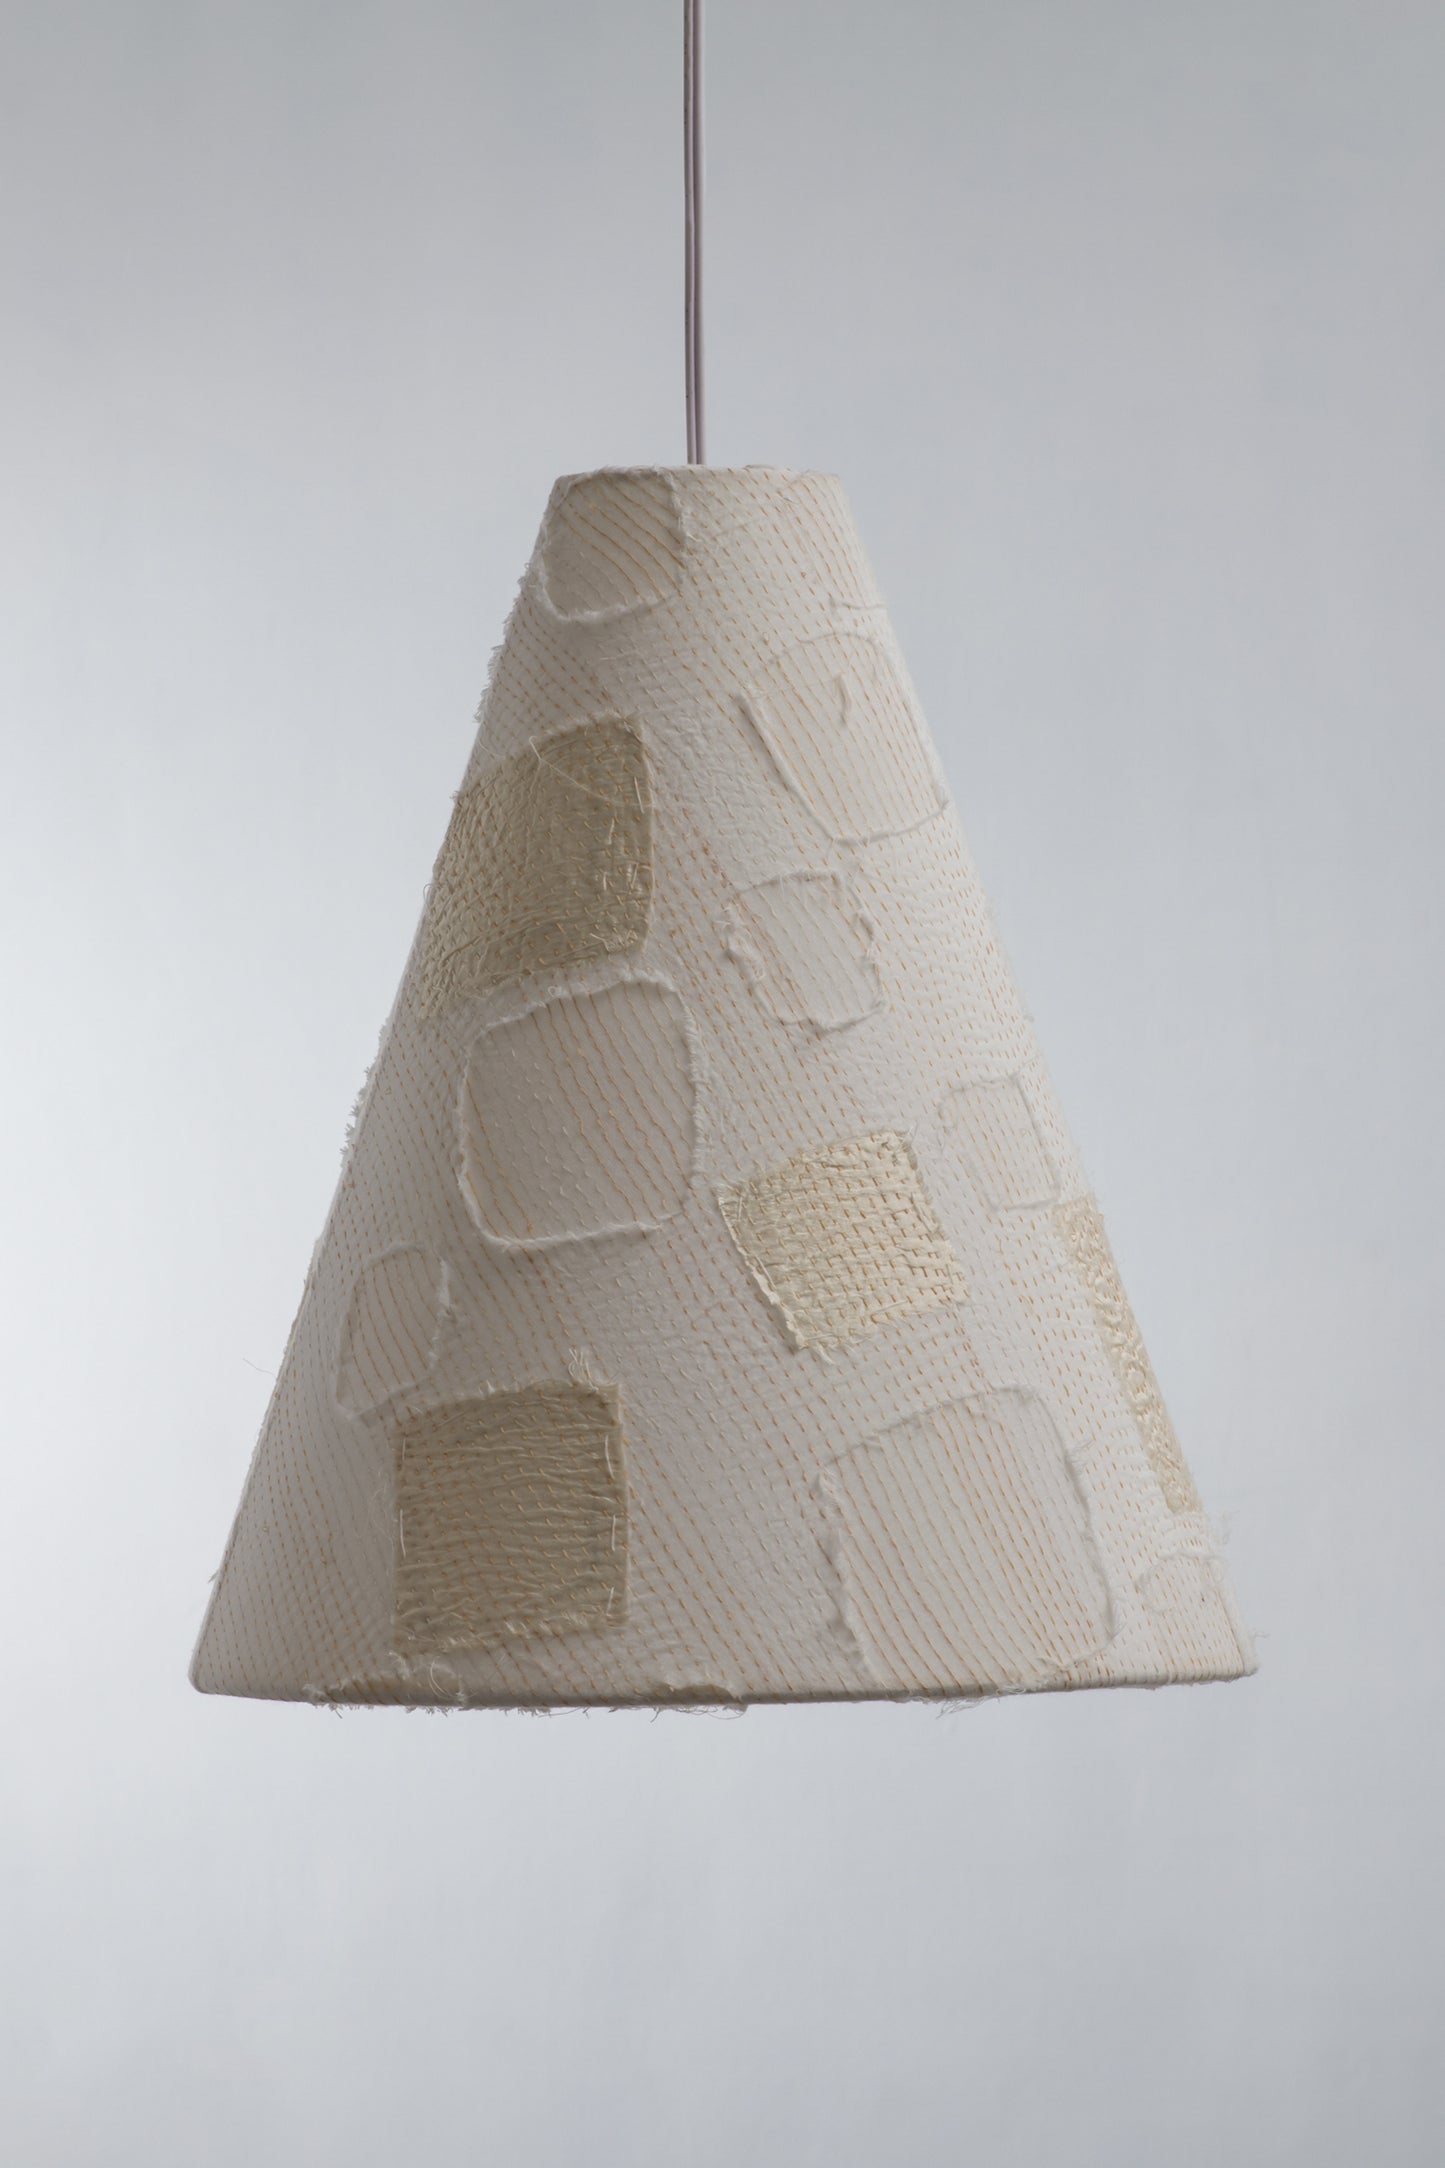 Cut through Square Kantha Hanging Pendant Lamp - White